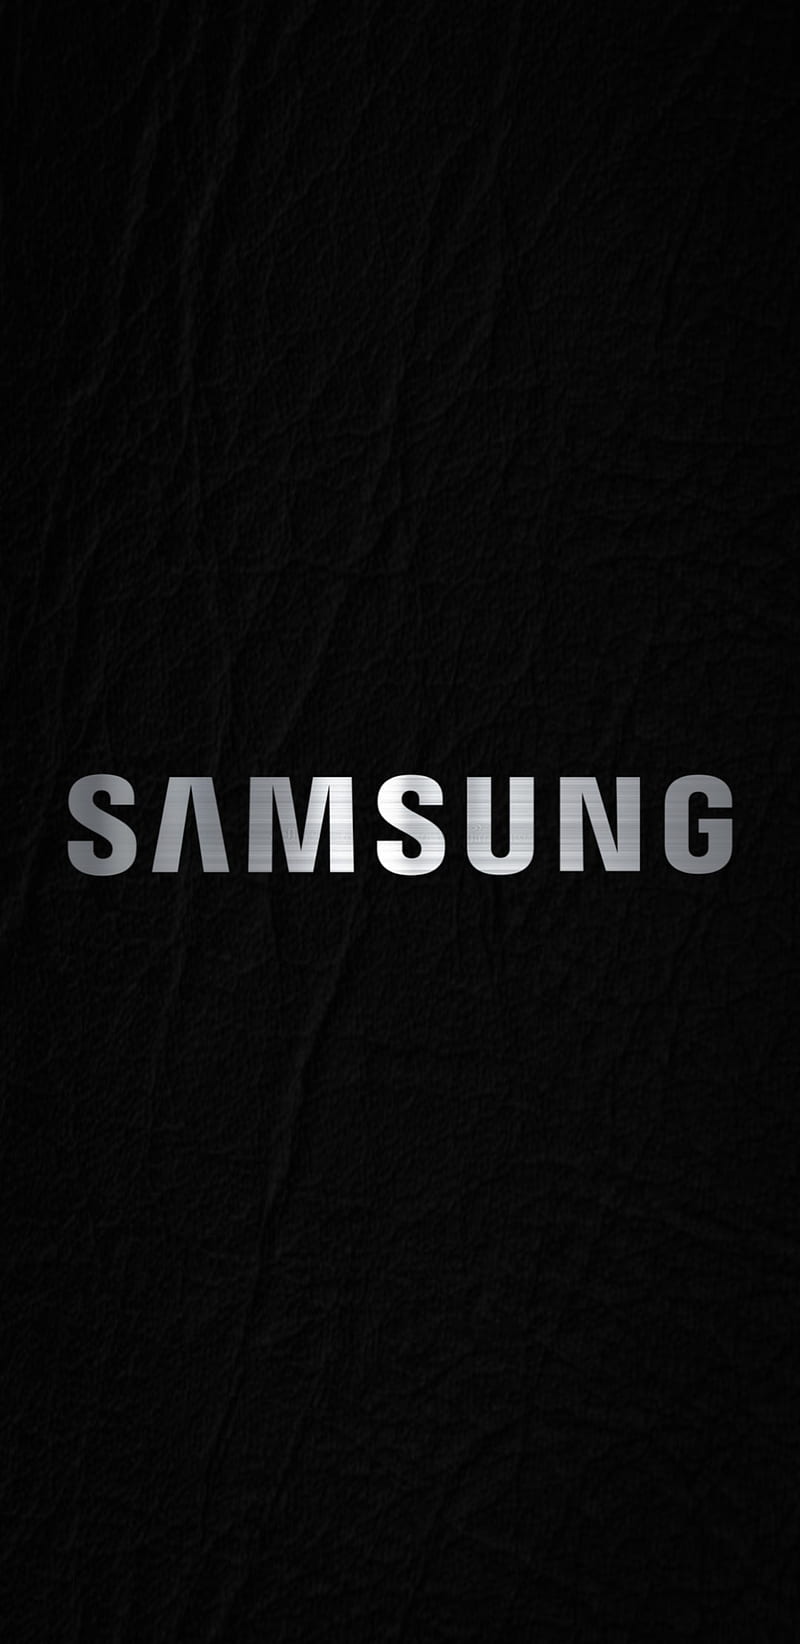 Khám phá Samsung Galaxy - dòng điện thoại thông minh đến từ một trong những thương hiệu hàng đầu thế giới. Với thiết kế đẹp mắt, tính năng ấn tượng và hiệu suất cao, Samsung Galaxy là lựa chọn tuyệt vời cho những người đam mê công nghệ.